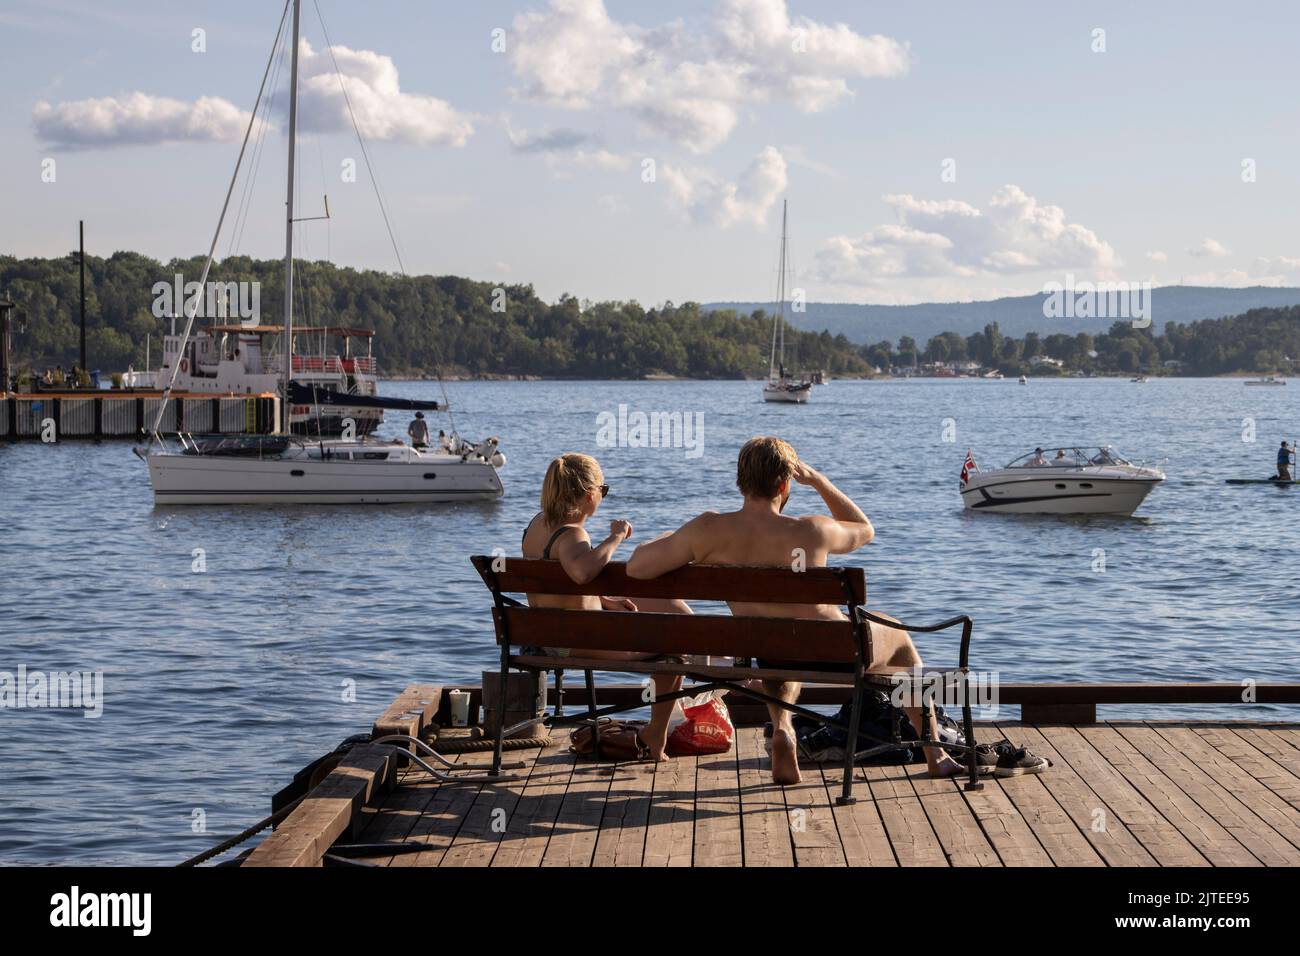 Una joven pareja disfruta del sol de la tarde mientras se sienta en un banco en el puerto de Oslo con vistas al fiordo de Oslo, Noruega, Escandinavia. Foto de stock